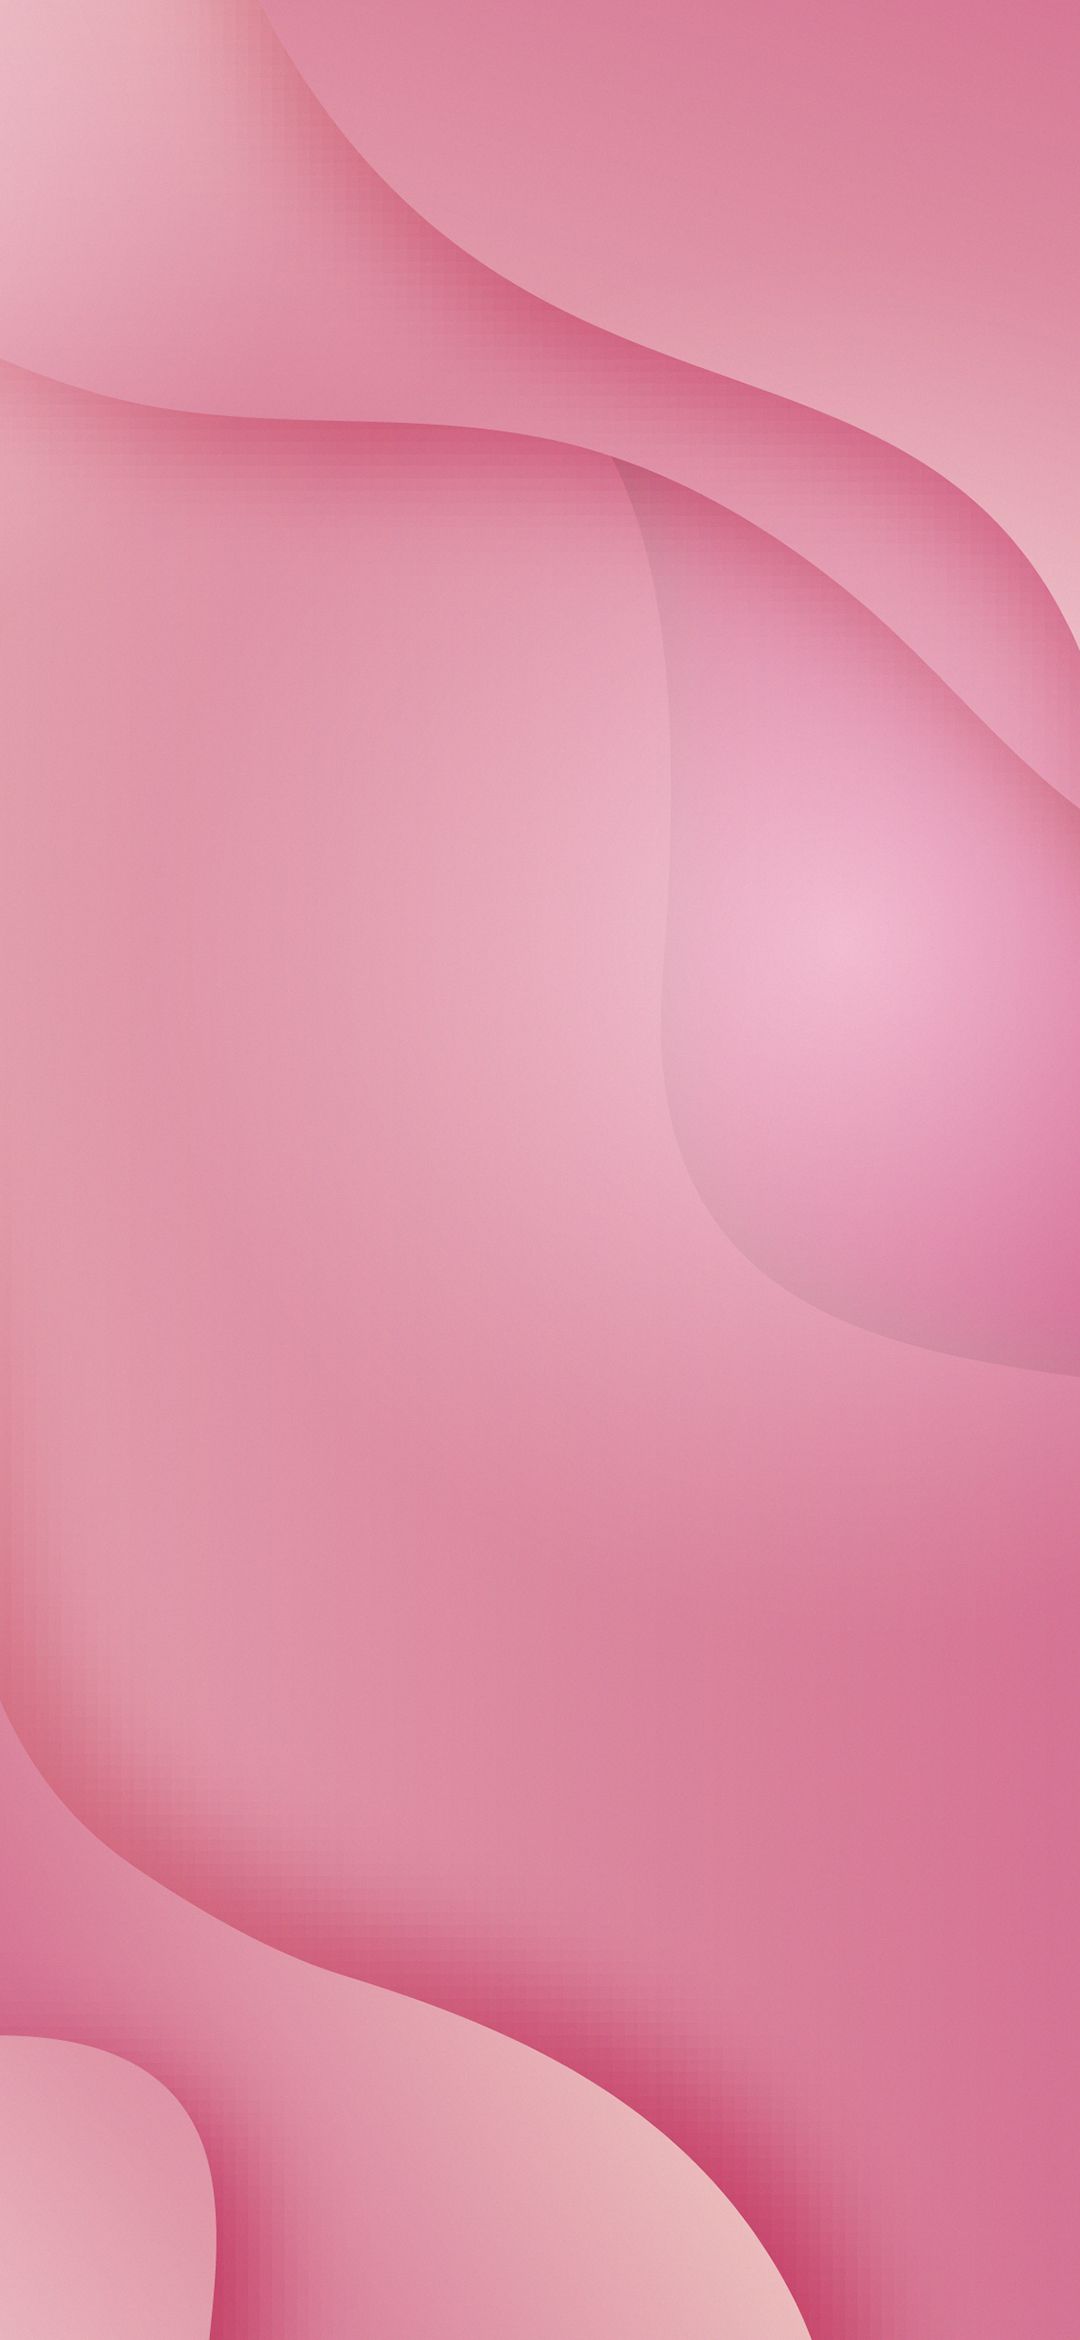 MIUI 11 Concept Wallpaper 13 - [1080x2340]